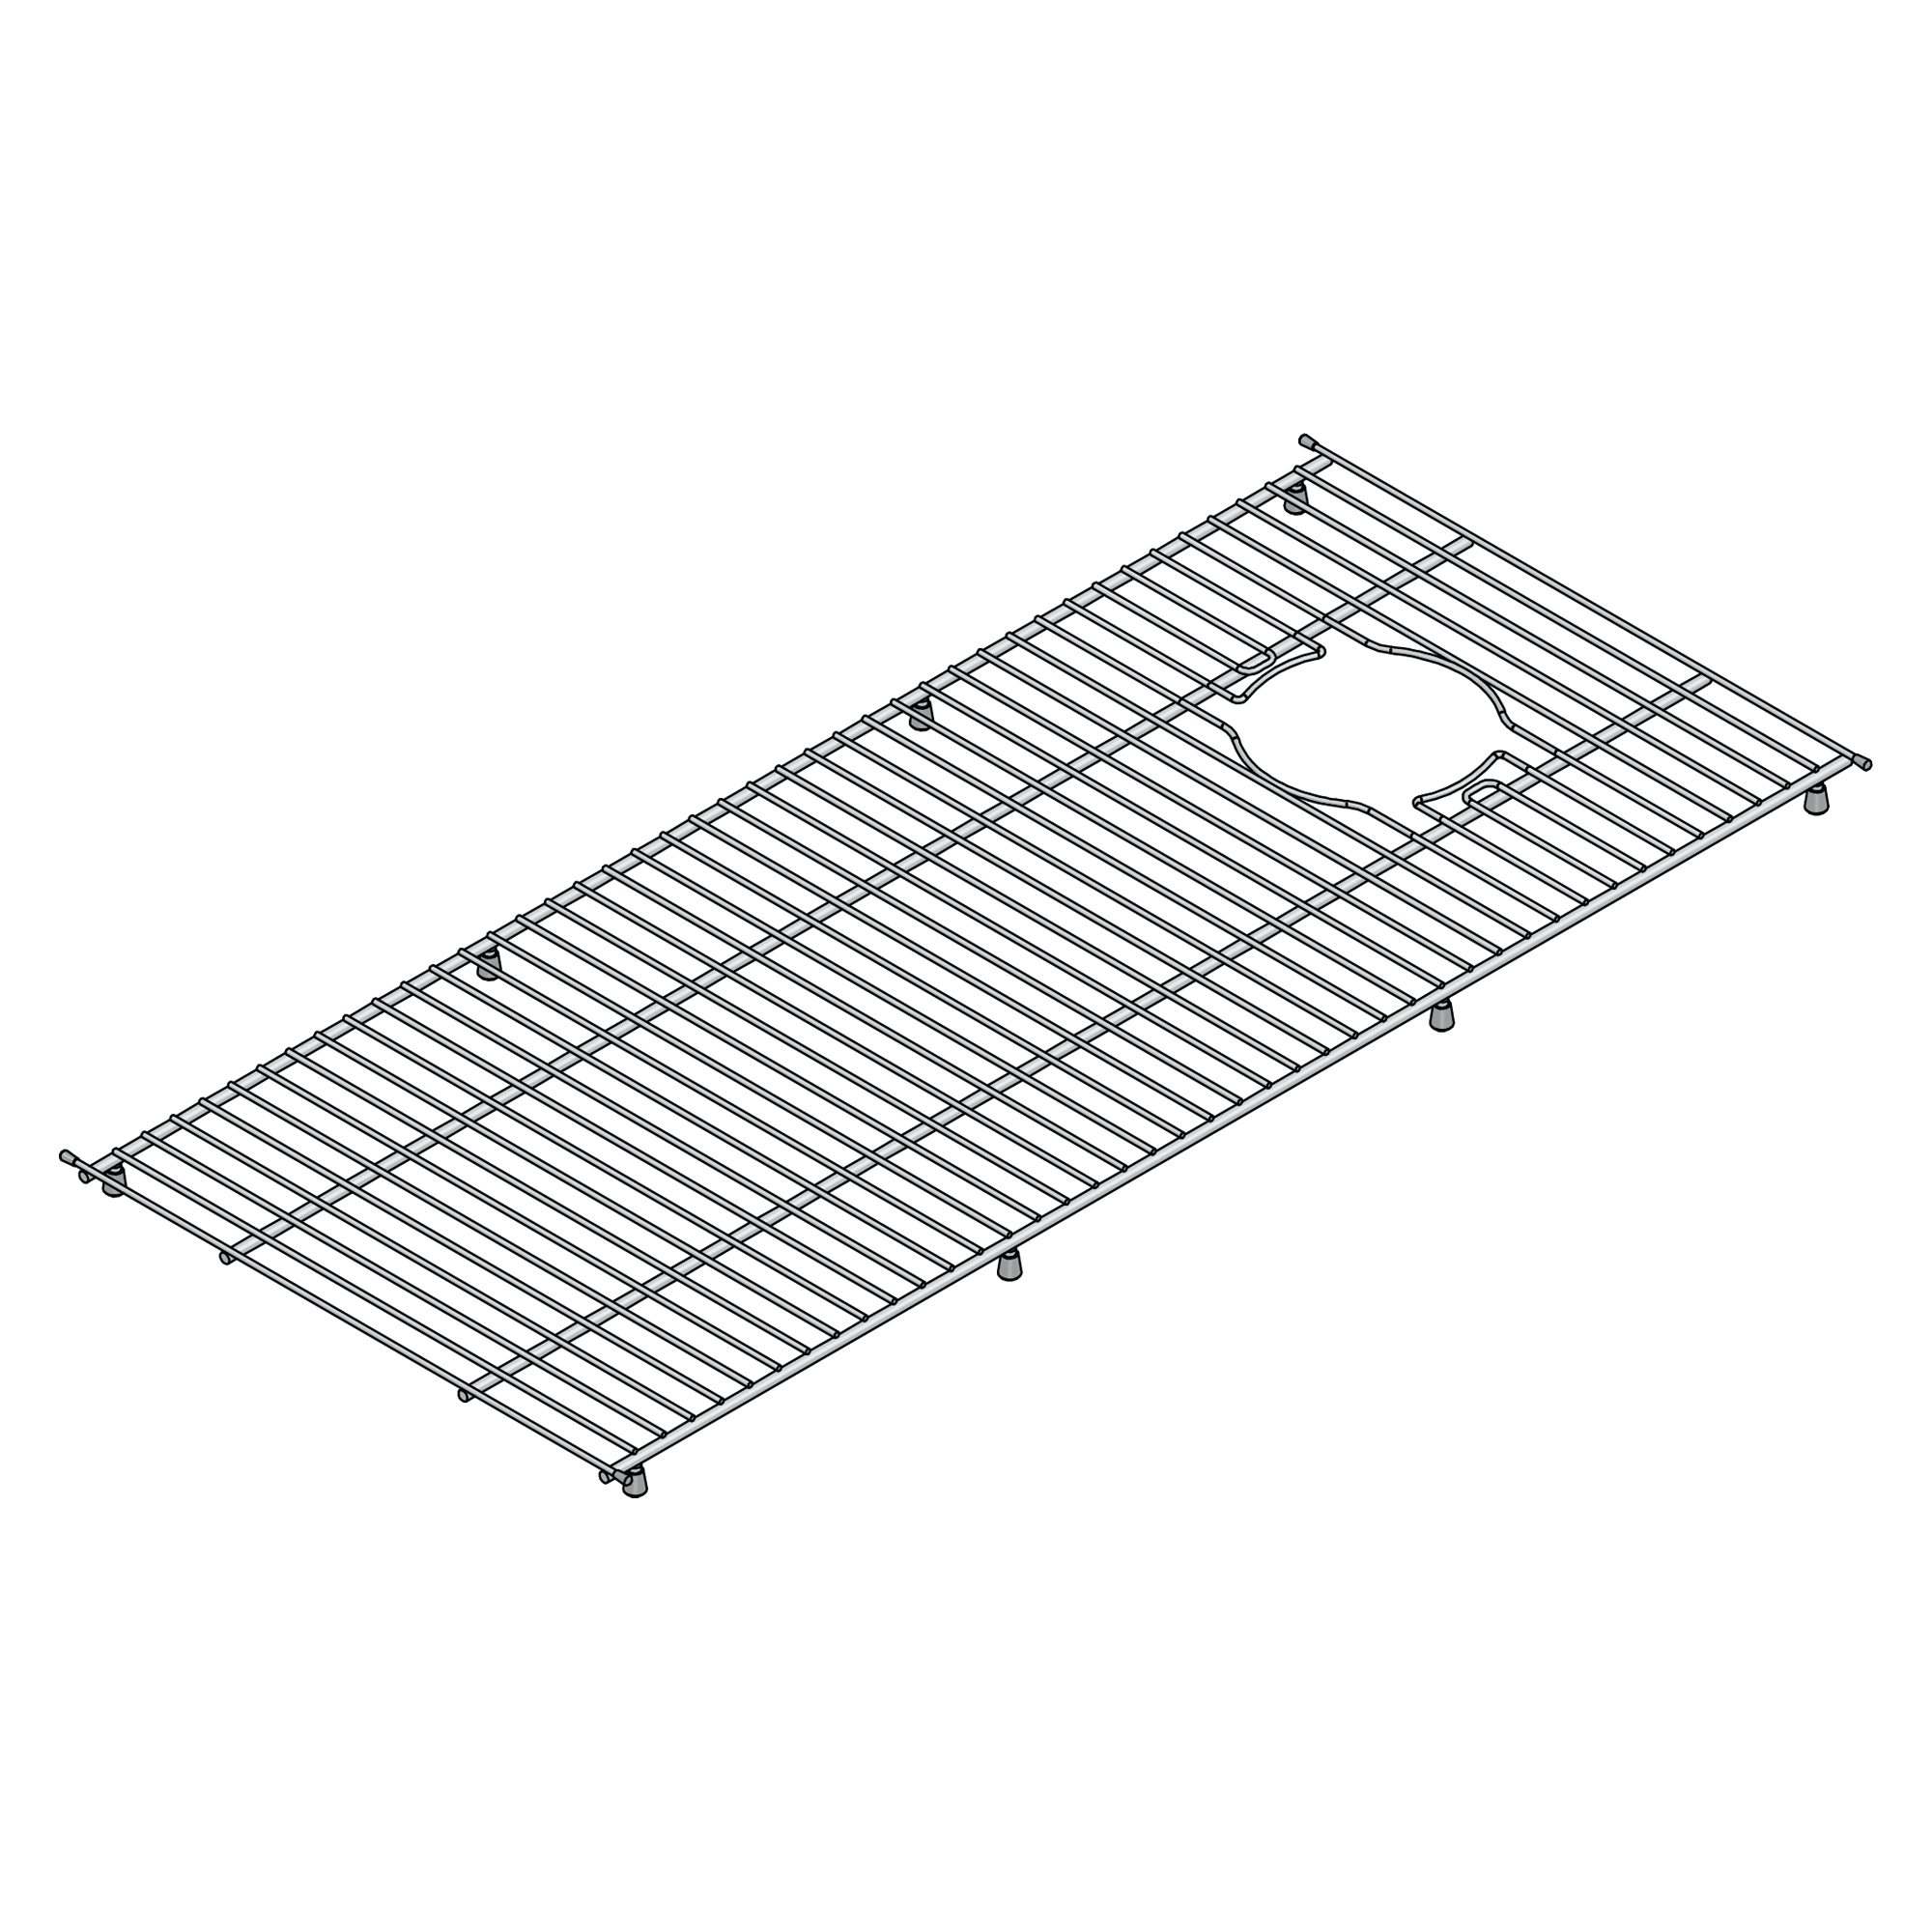 Grid – Type 9 – Shaws of Darwen